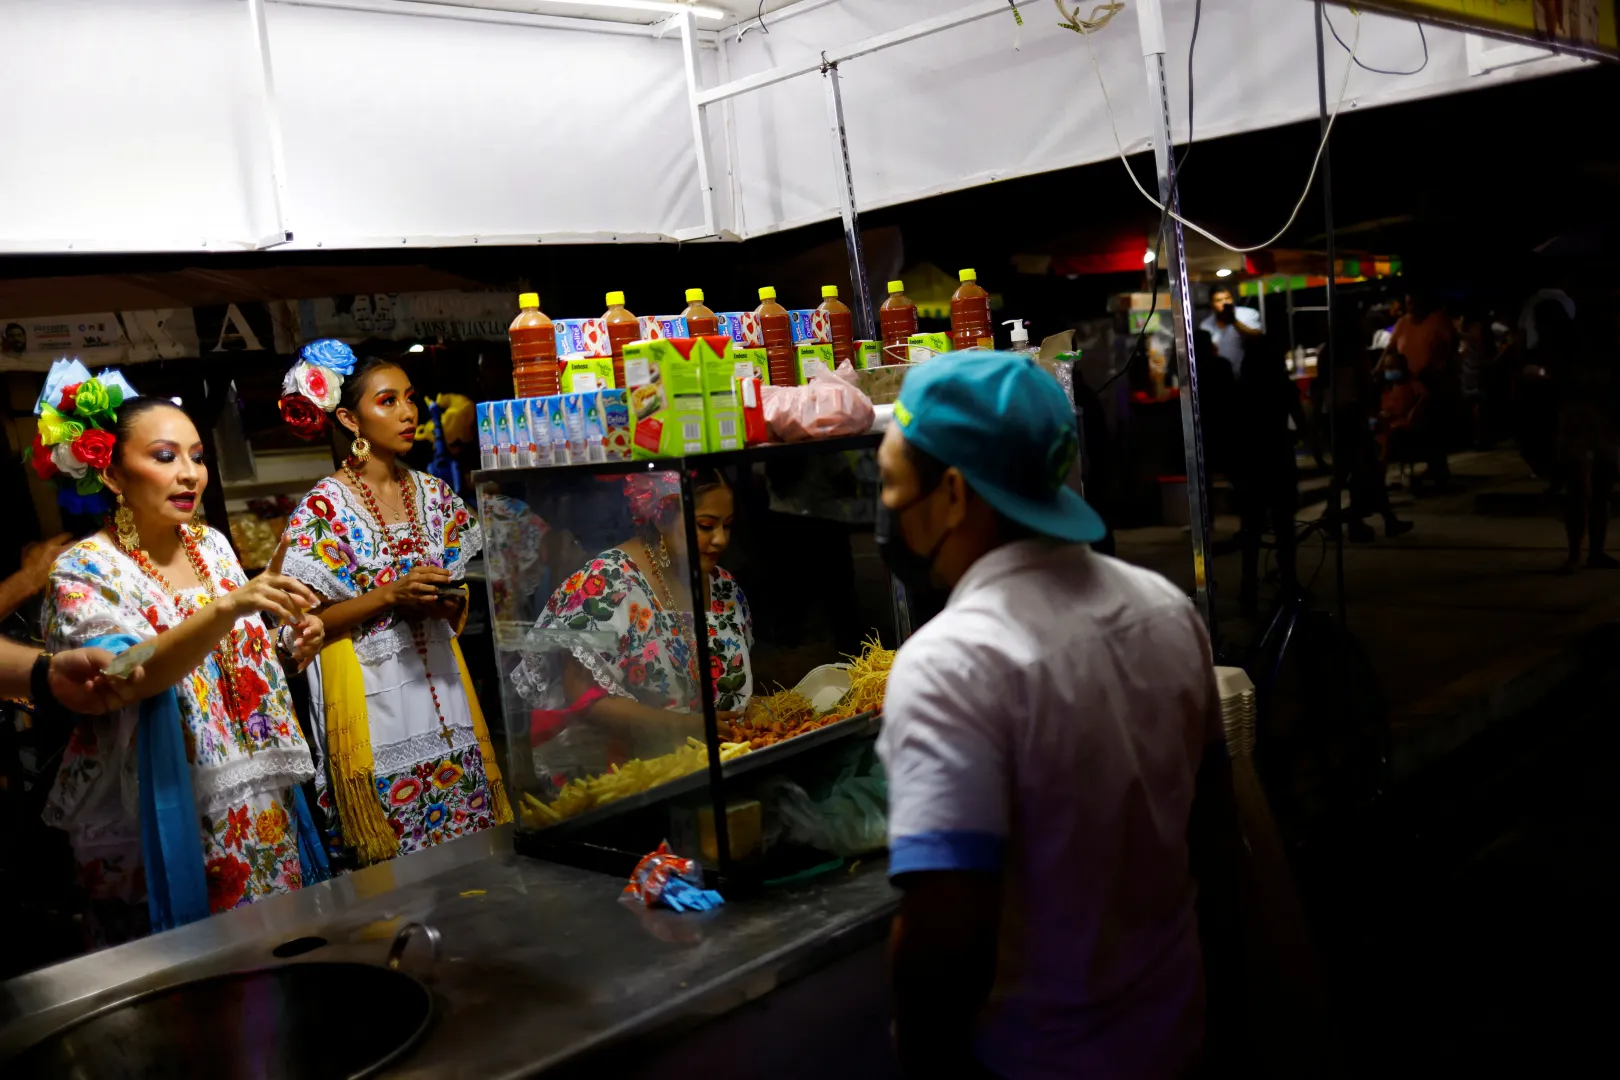  Népviseletbe öltözött nők rendelnek ételt egy rendezvényen egy vasút melletti településen – Fotó: Jose Luis Gonzalez / Reuters